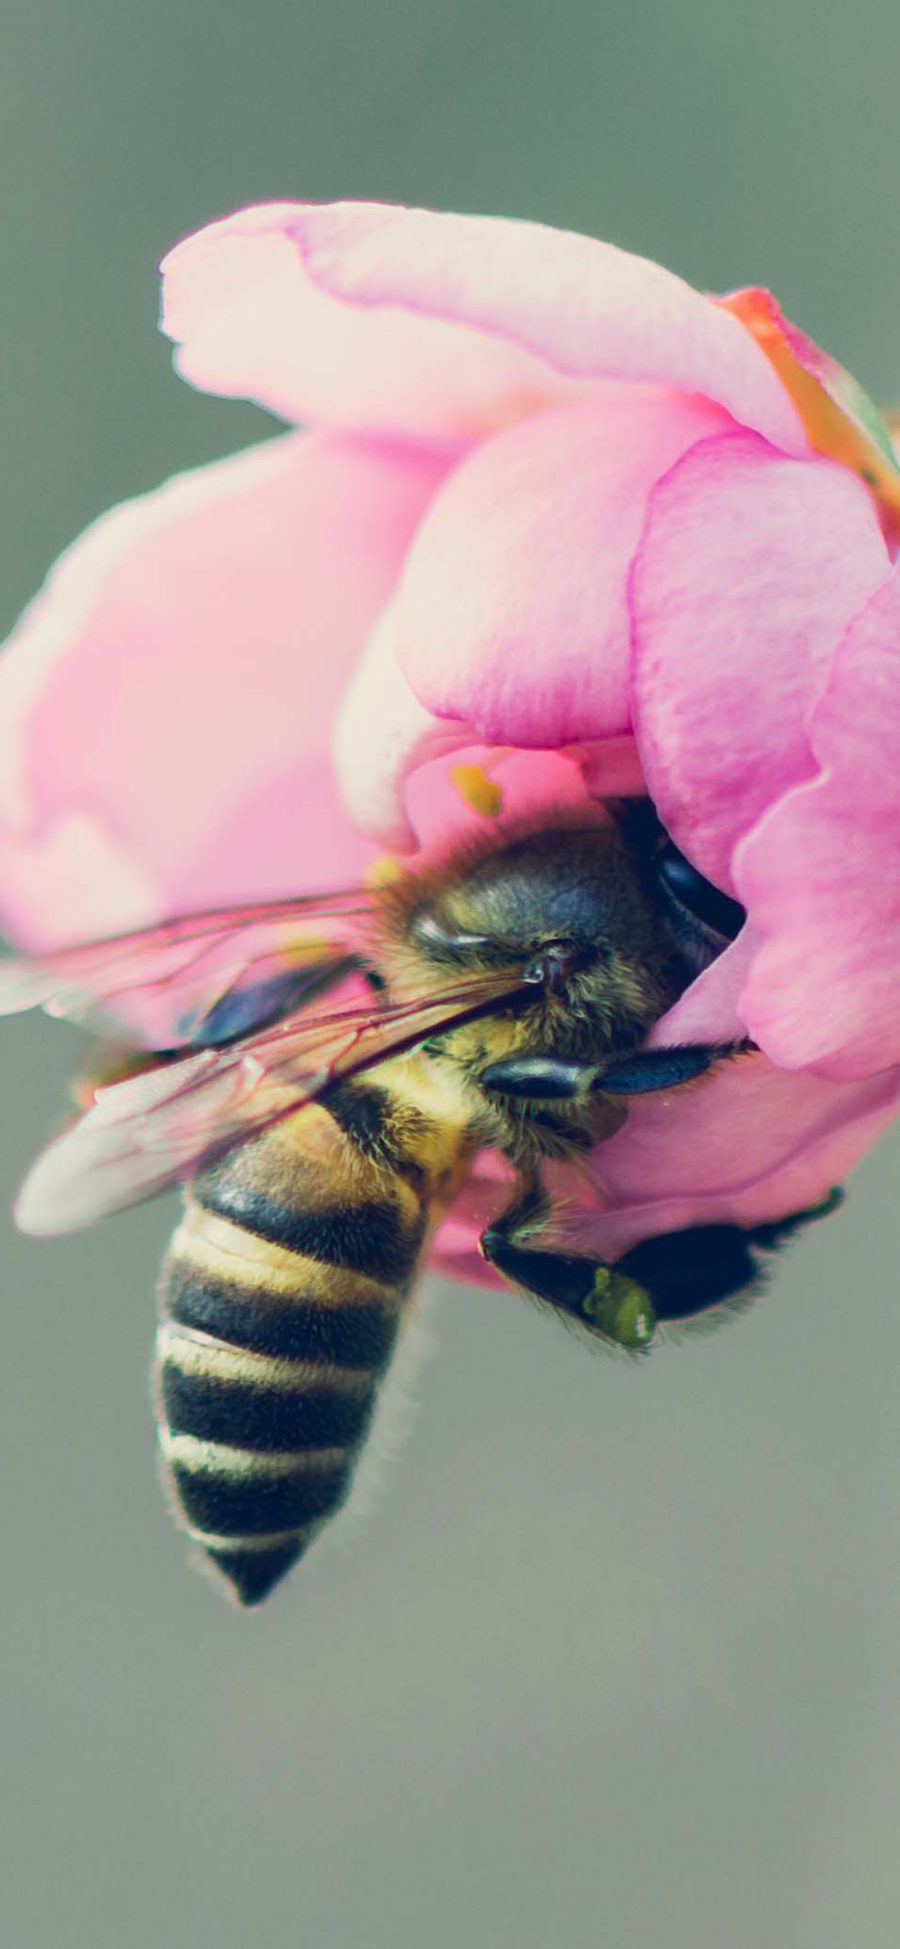 [2436×1125]蜜蜂 鲜花 采蜜 飞行 苹果手机壁纸图片